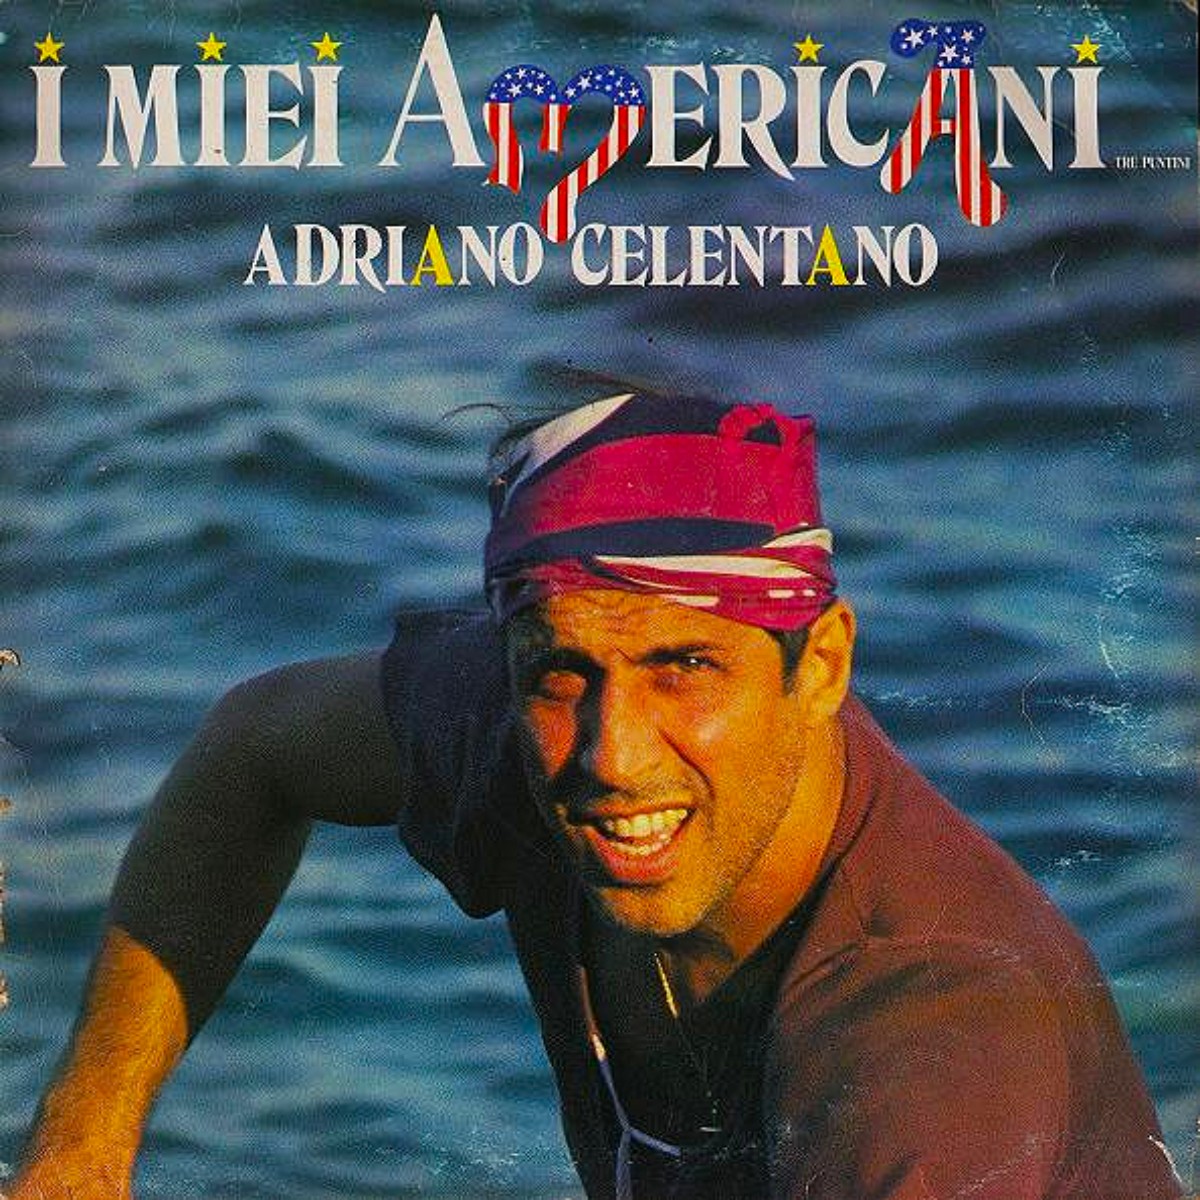 Adriano Celentano，專輯 I miei Americani